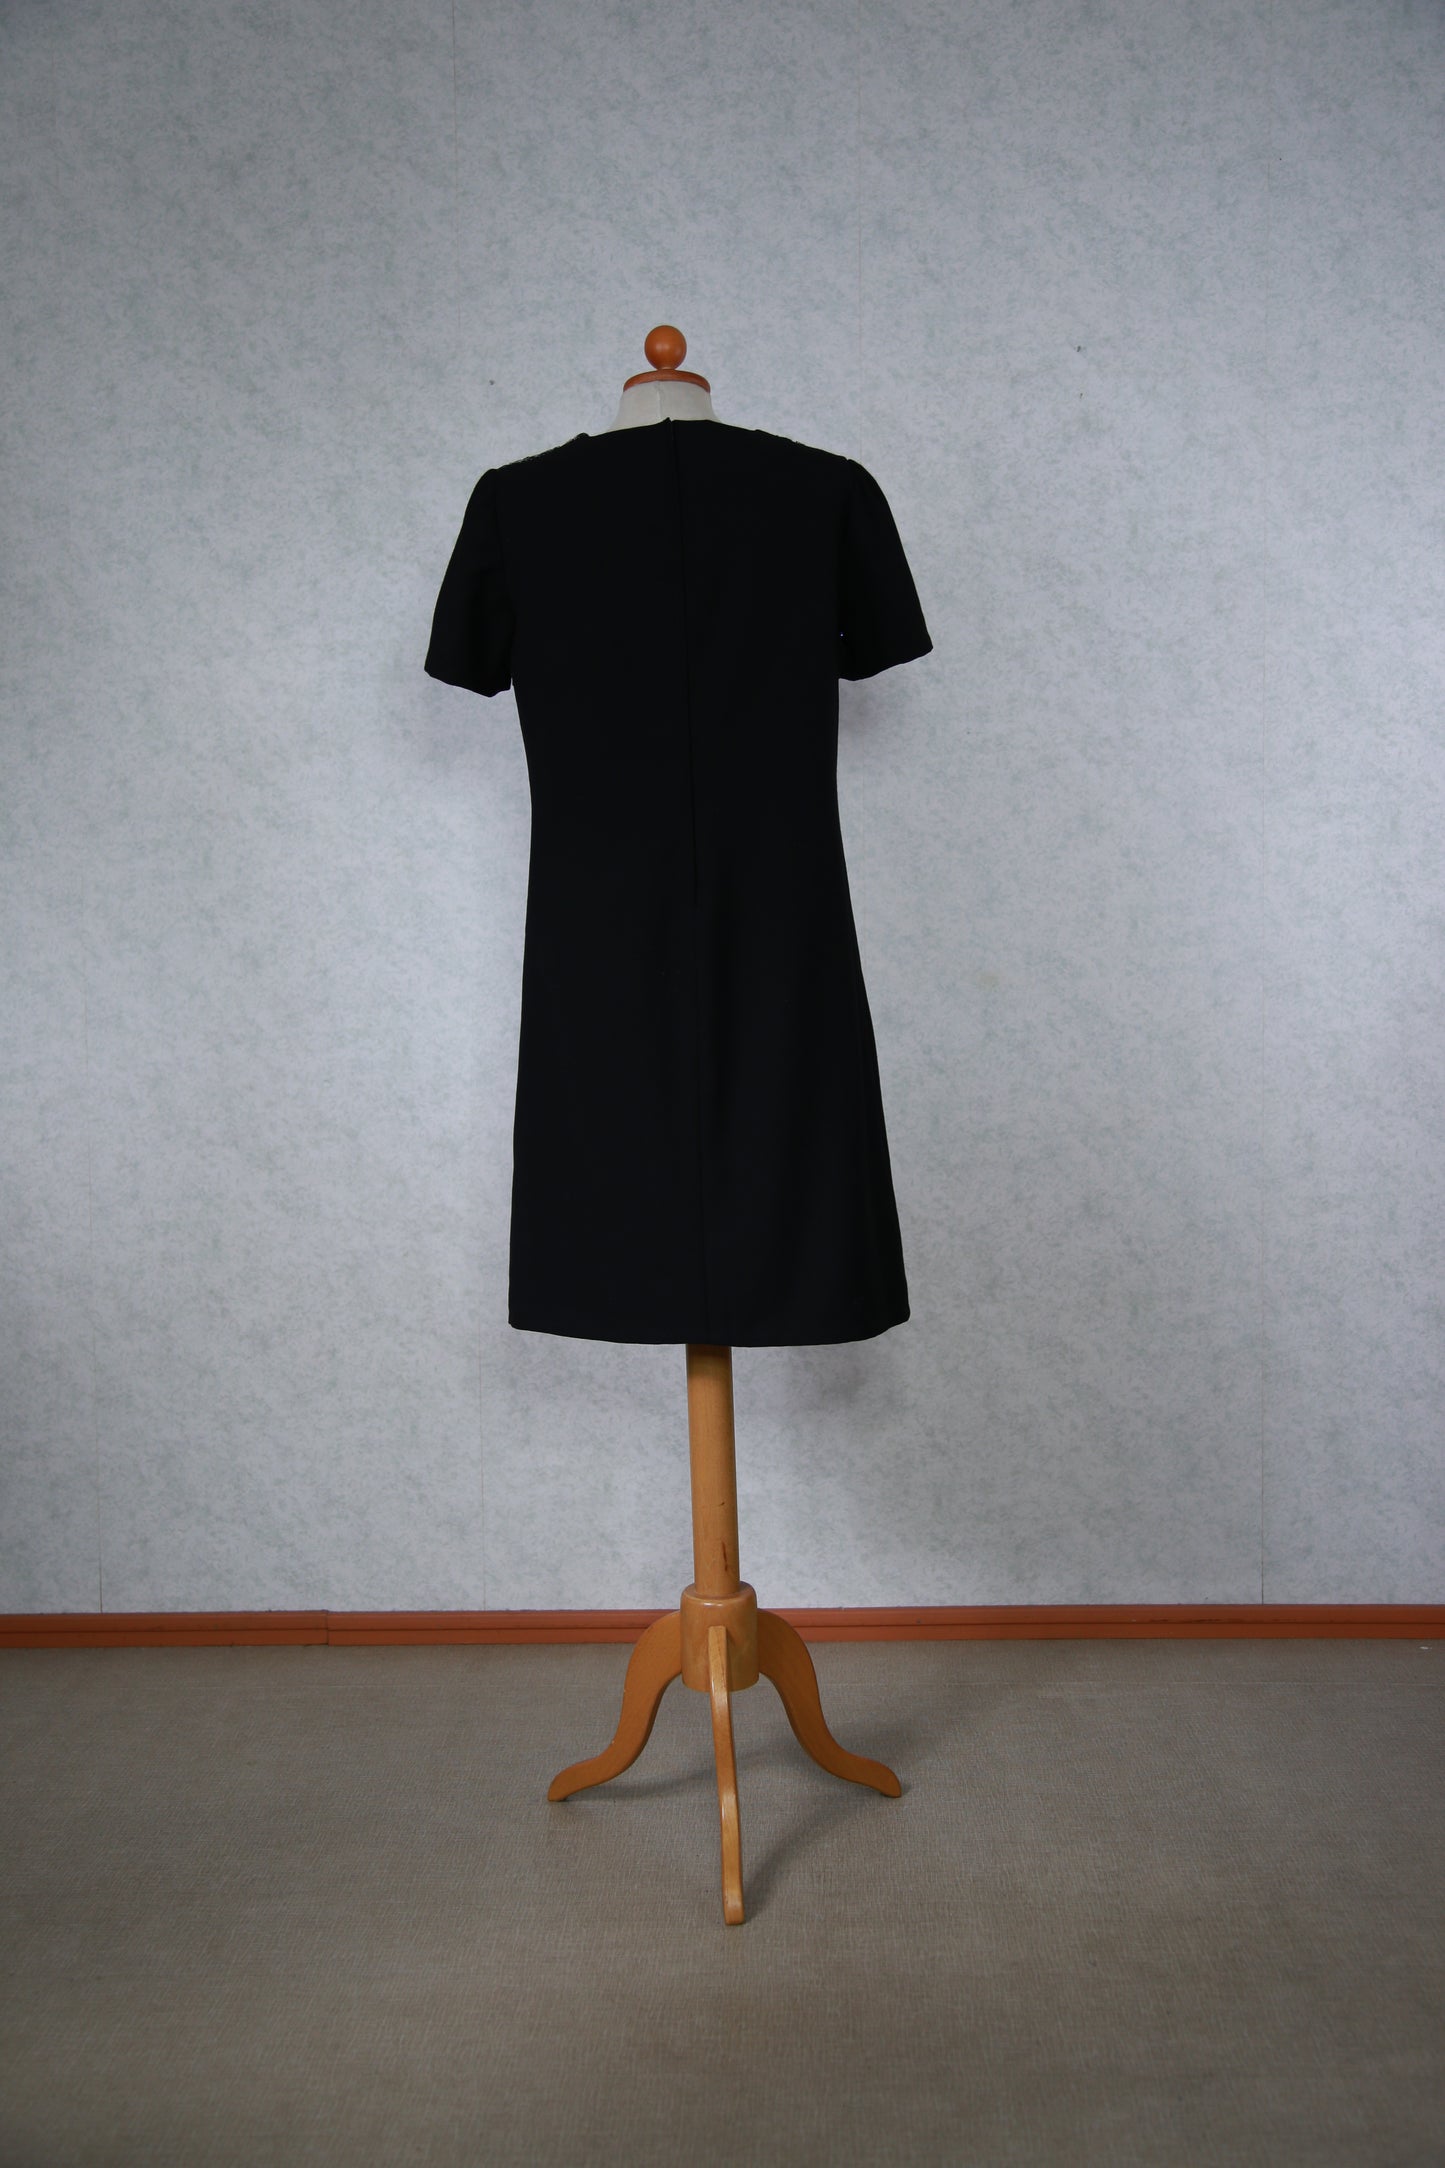 Musta Siro-Puku mekko kimaltelevilla yksityiskohdilla